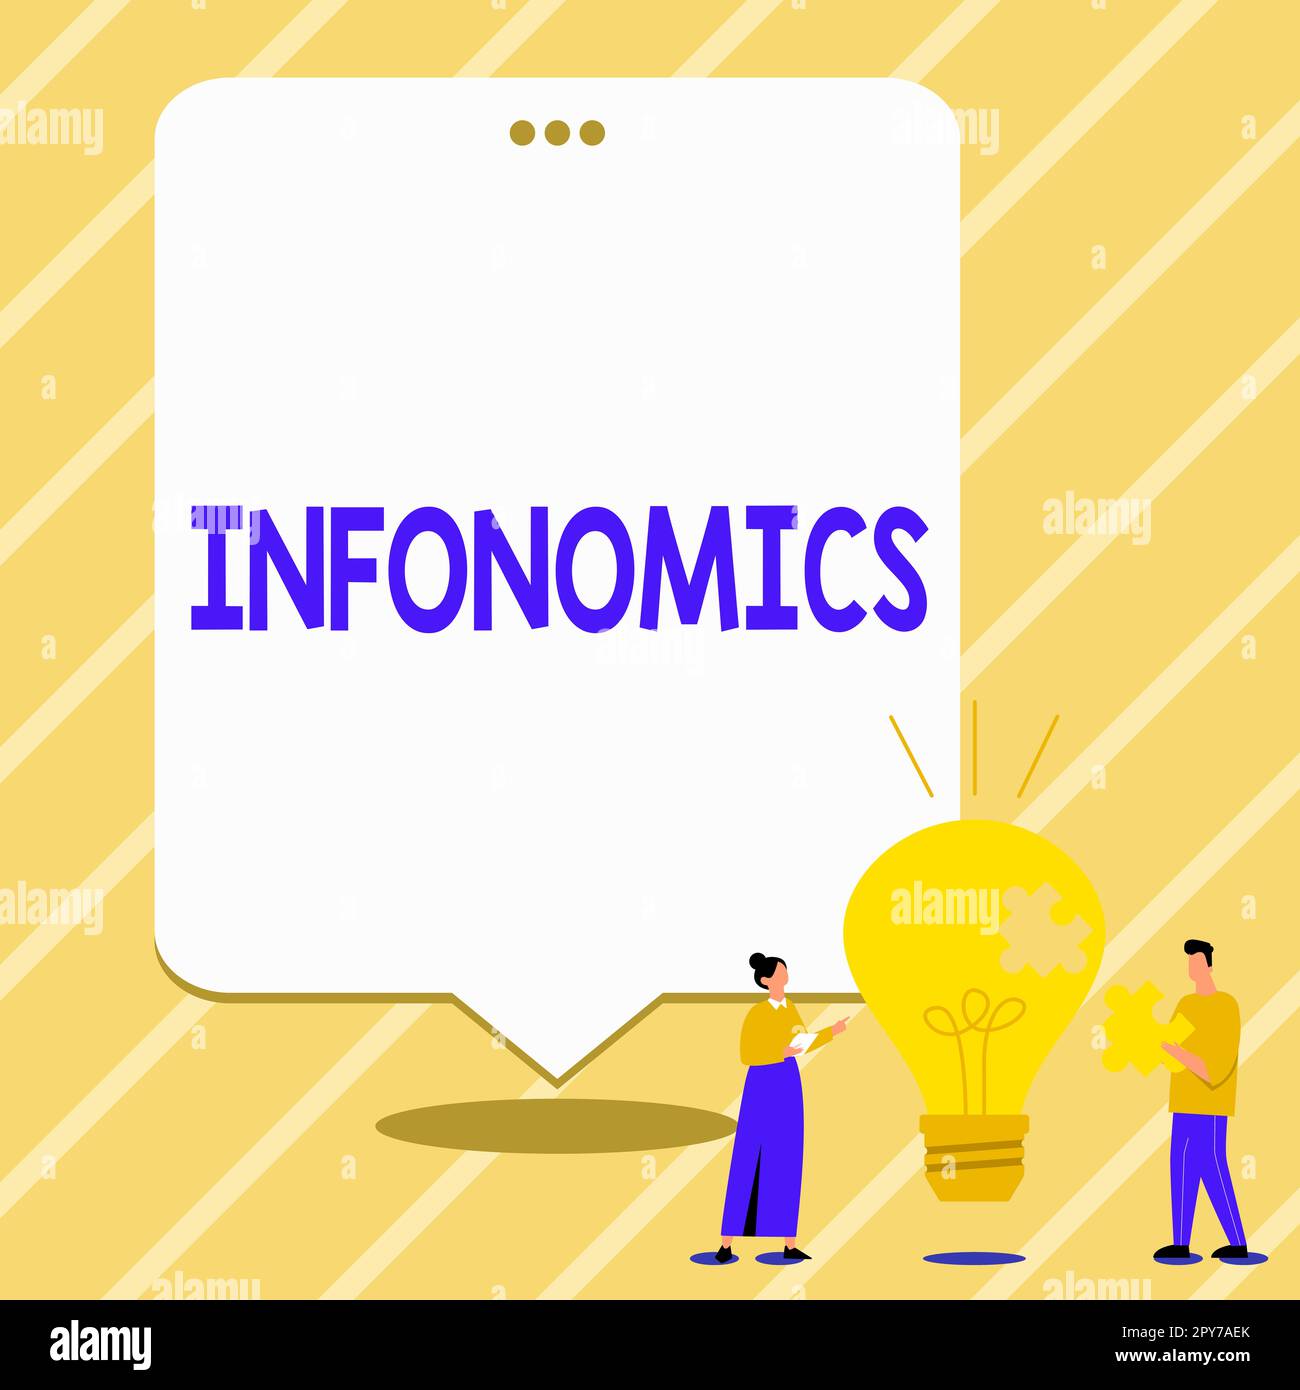 Texto que muestra inspiración Infonomics. Visión general del negocio Imagen visual utilizada para representar información o datos Foto de stock